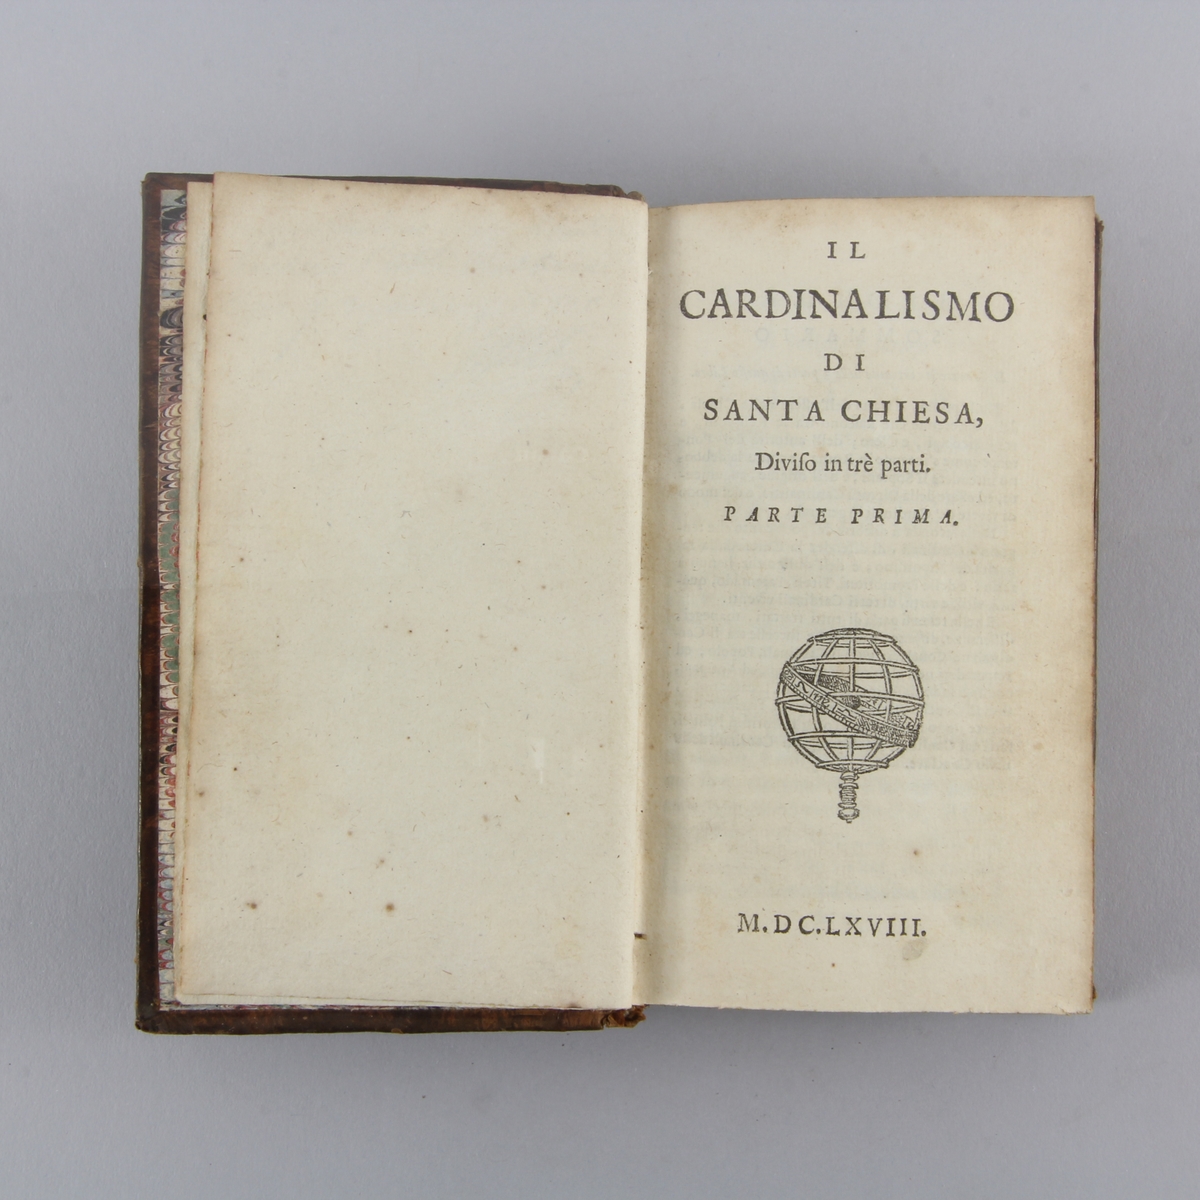 Bok, helfranskt band "Il cardinalismo di Santa Chiesa", del 1. Skinnband med guldpräglad rygg i fem upphöjda bind, marmorerat papper på pärmens insida. Rödstänkt skuret snitt.
Anteckning om förvärv.